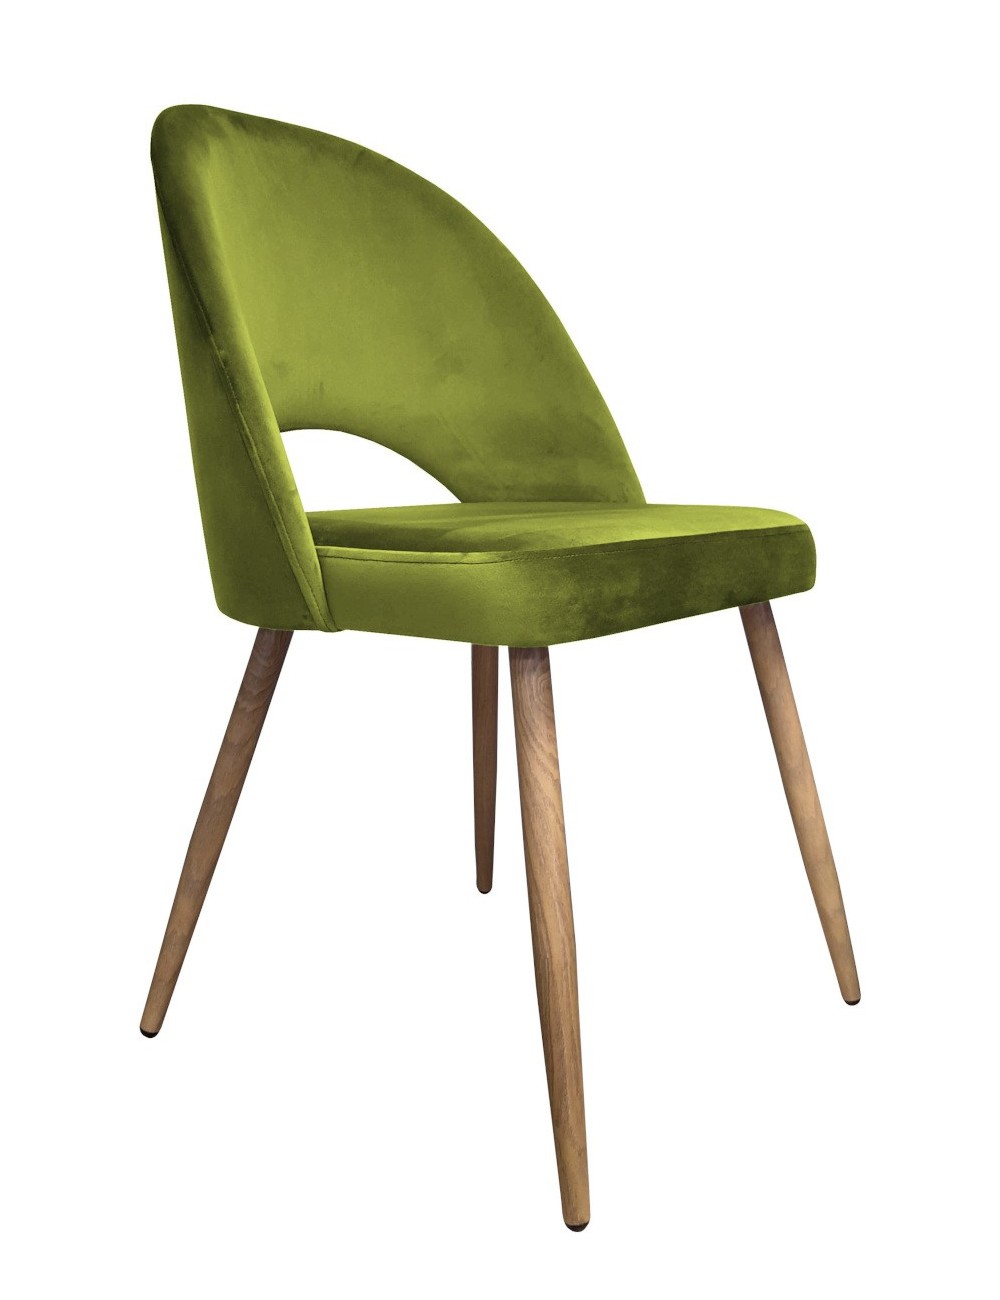 Krzesło Polo noga dąb BL75 zielona oliwka					